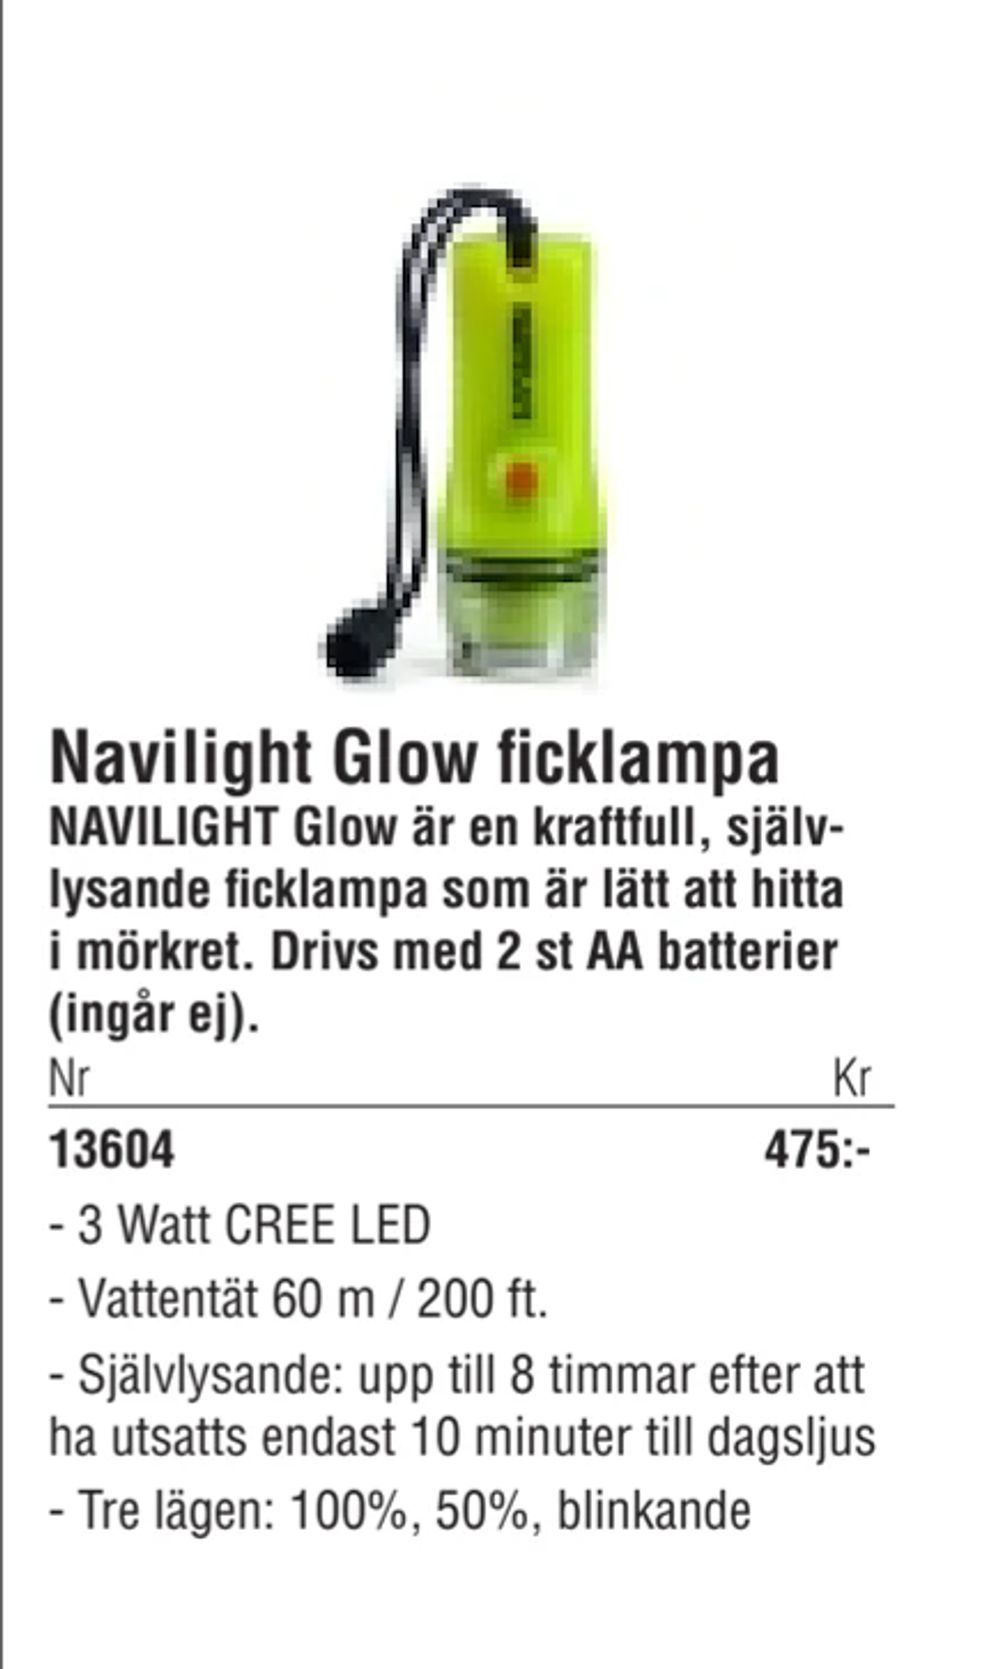 Erbjudanden på Navilight Glow ficklampa från Erlandsons Brygga för 475 kr